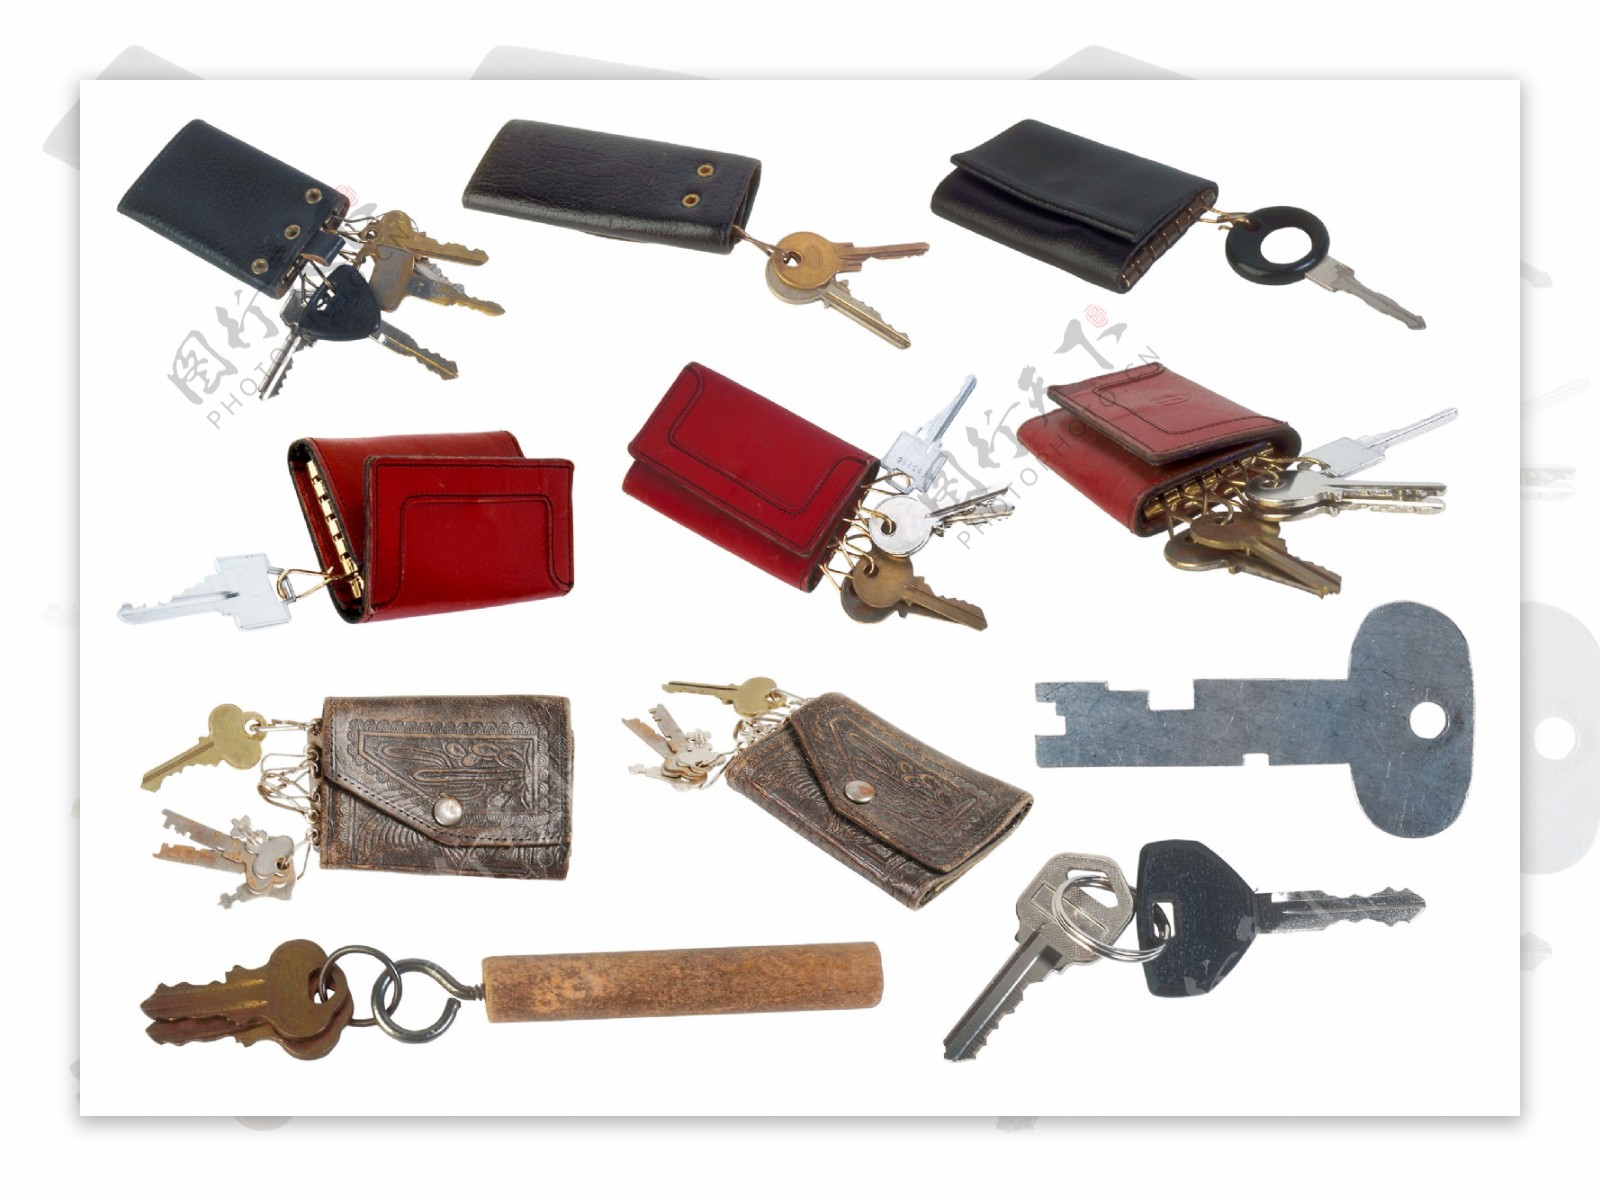 各种钥匙和钥匙包图片